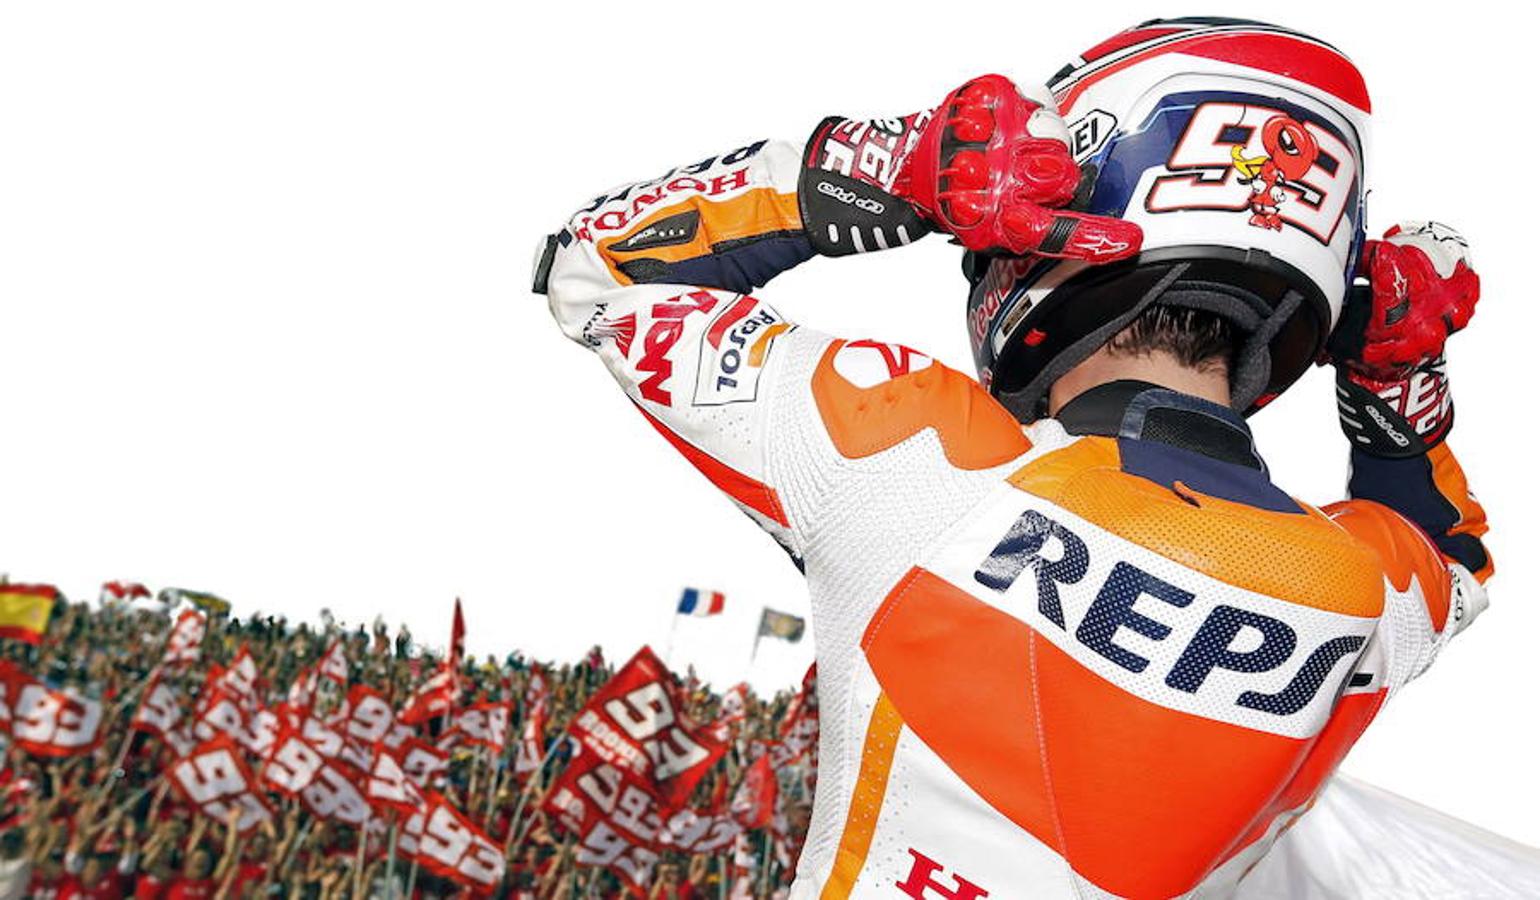 2013. MotoGP. Cheste. El primer español campeón de todo. Se convierte a Márquez en el primer rookie de la historia en ganar la clase reina y el primer español campeón de las tres categorías. Superó a Lorenzo en la clasificación por 4 puntos.